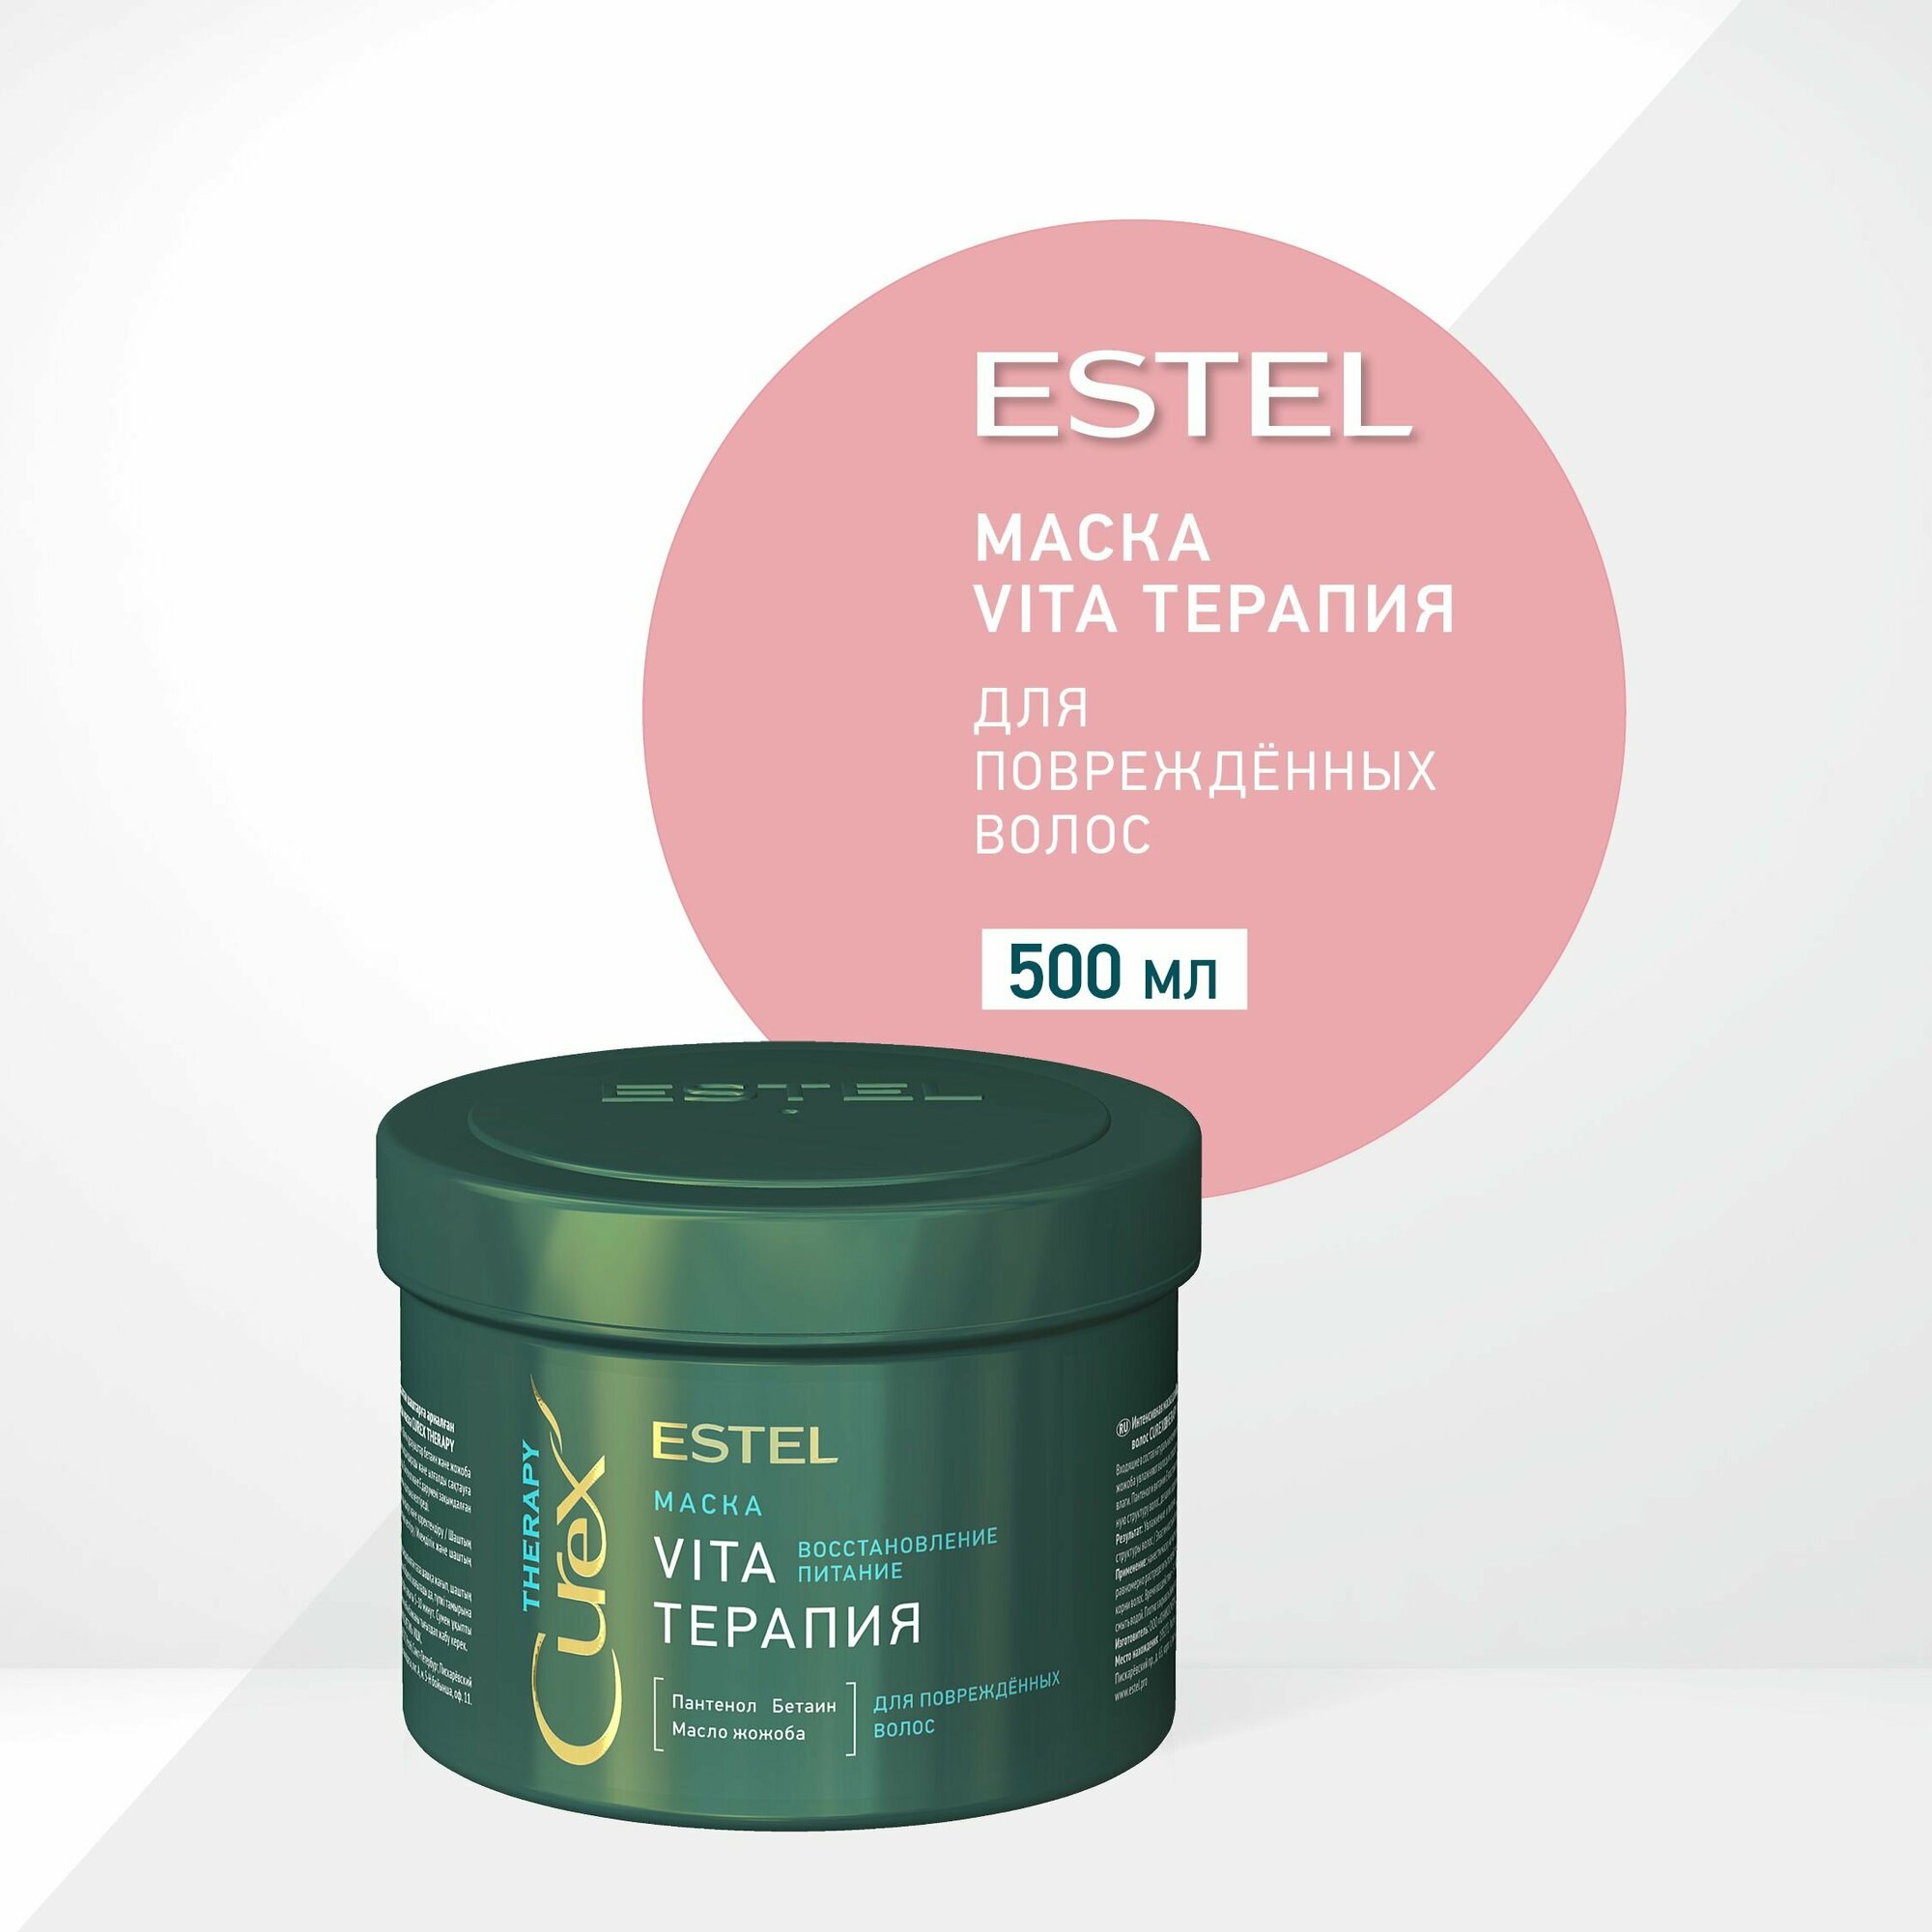 ESTEL Curex THERAPY, Маска vita-терапия для повреждённых волос (500мл)